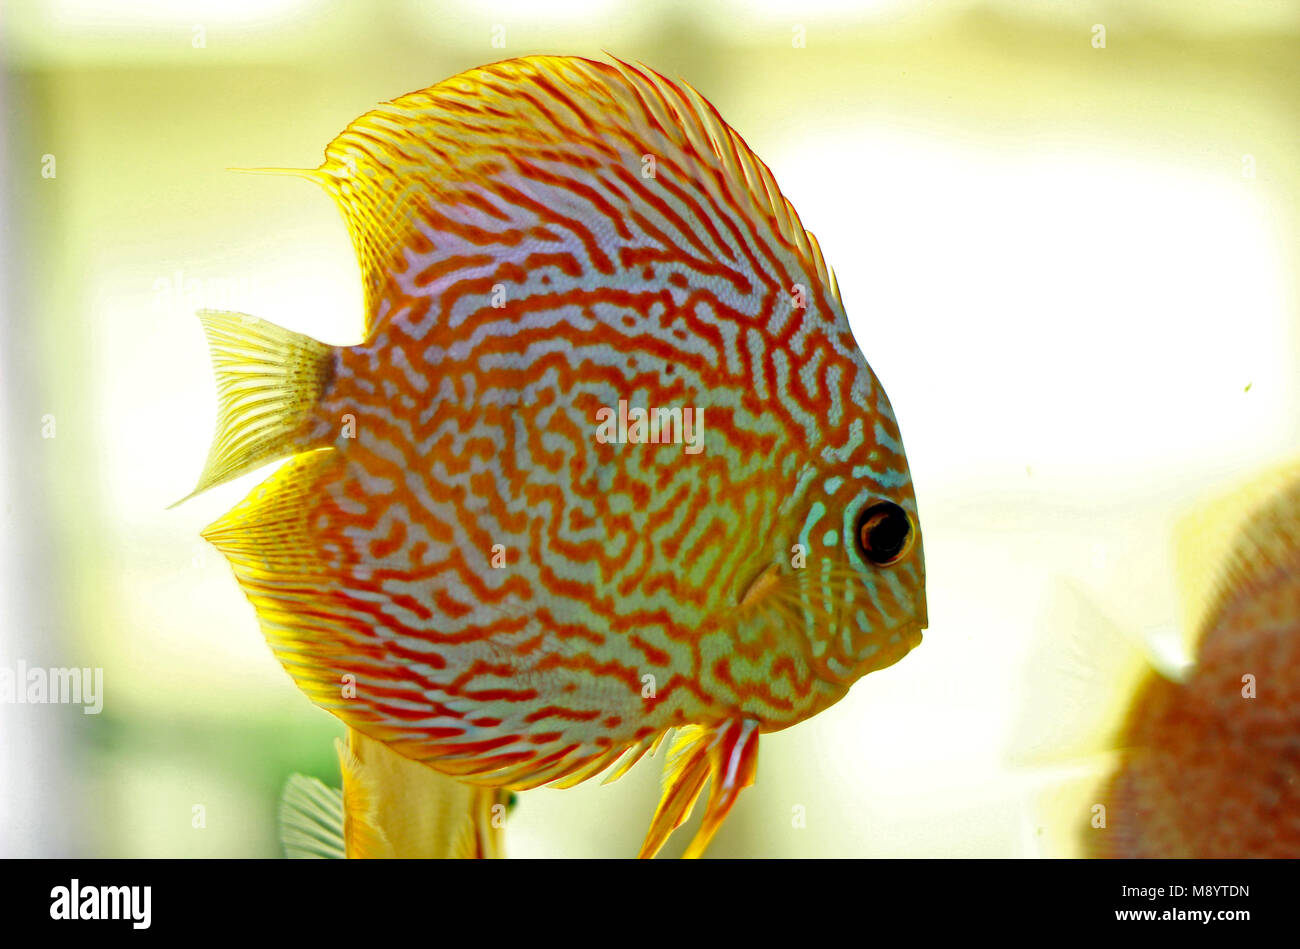 Discus fish in freshwater aquarium Stock Photo